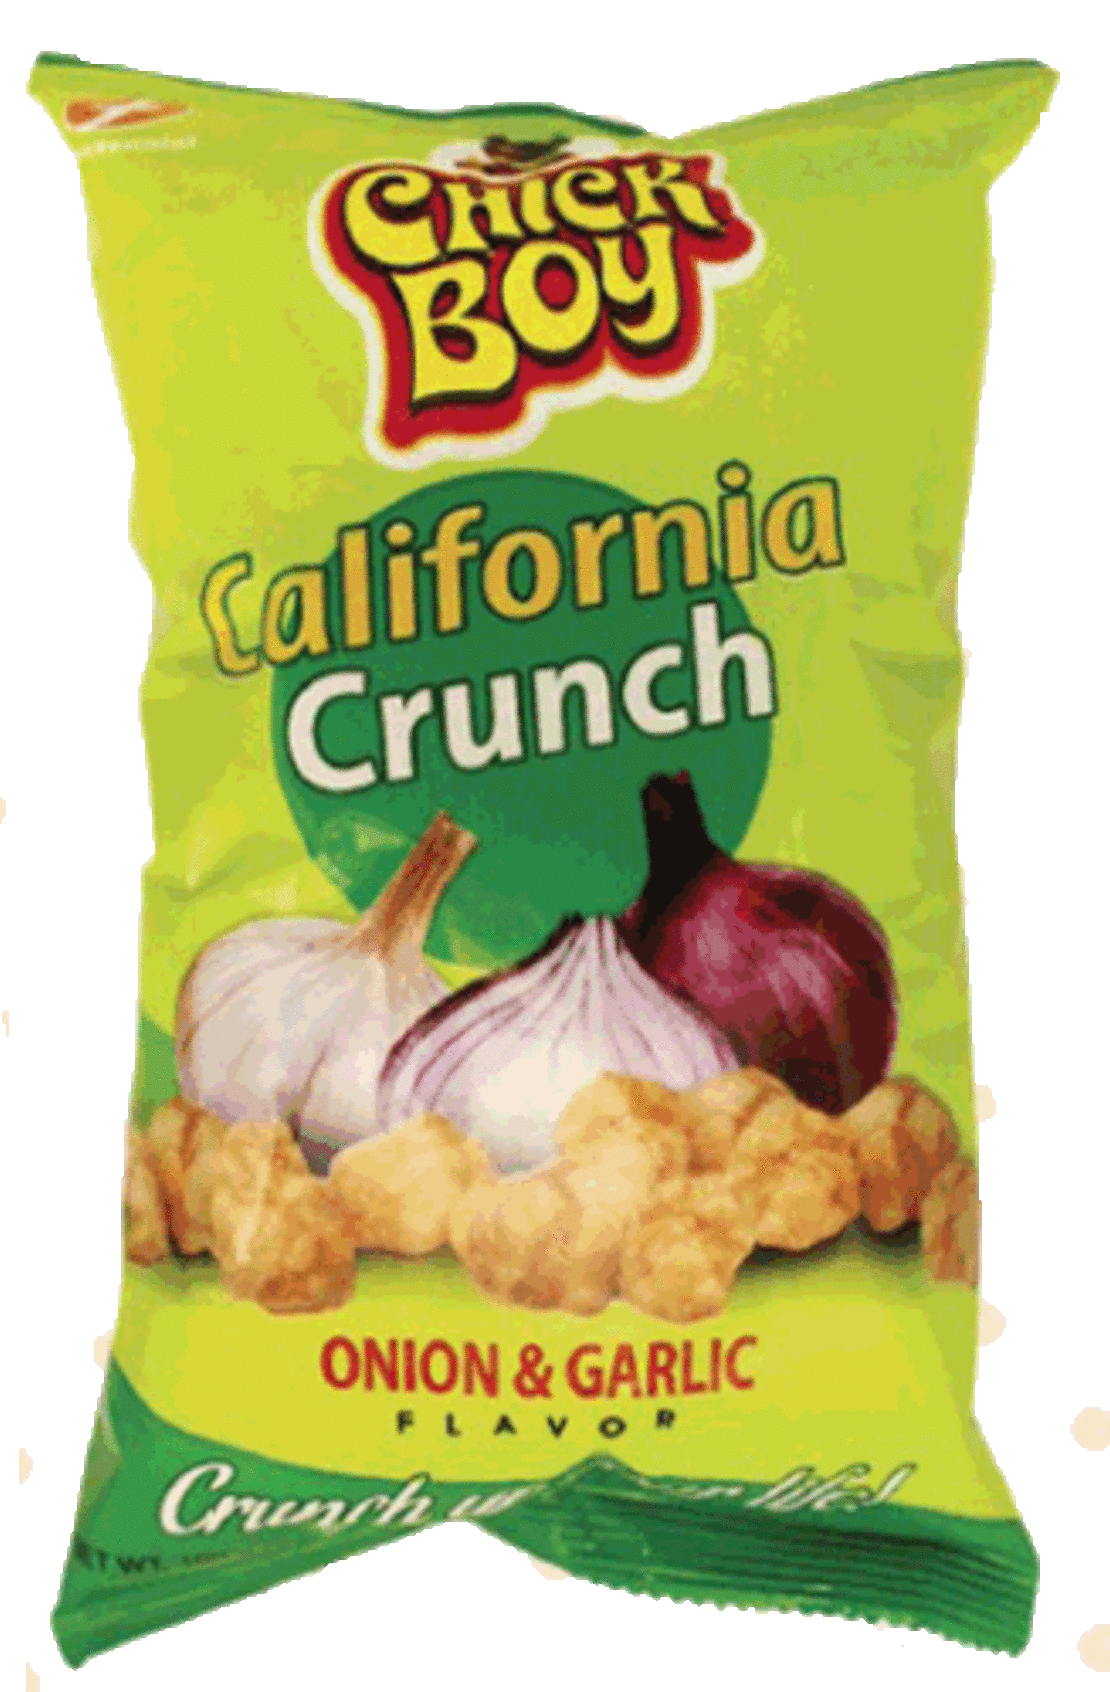 Chick Boy - California Crunch - Onion & Garlic Flavor 100g